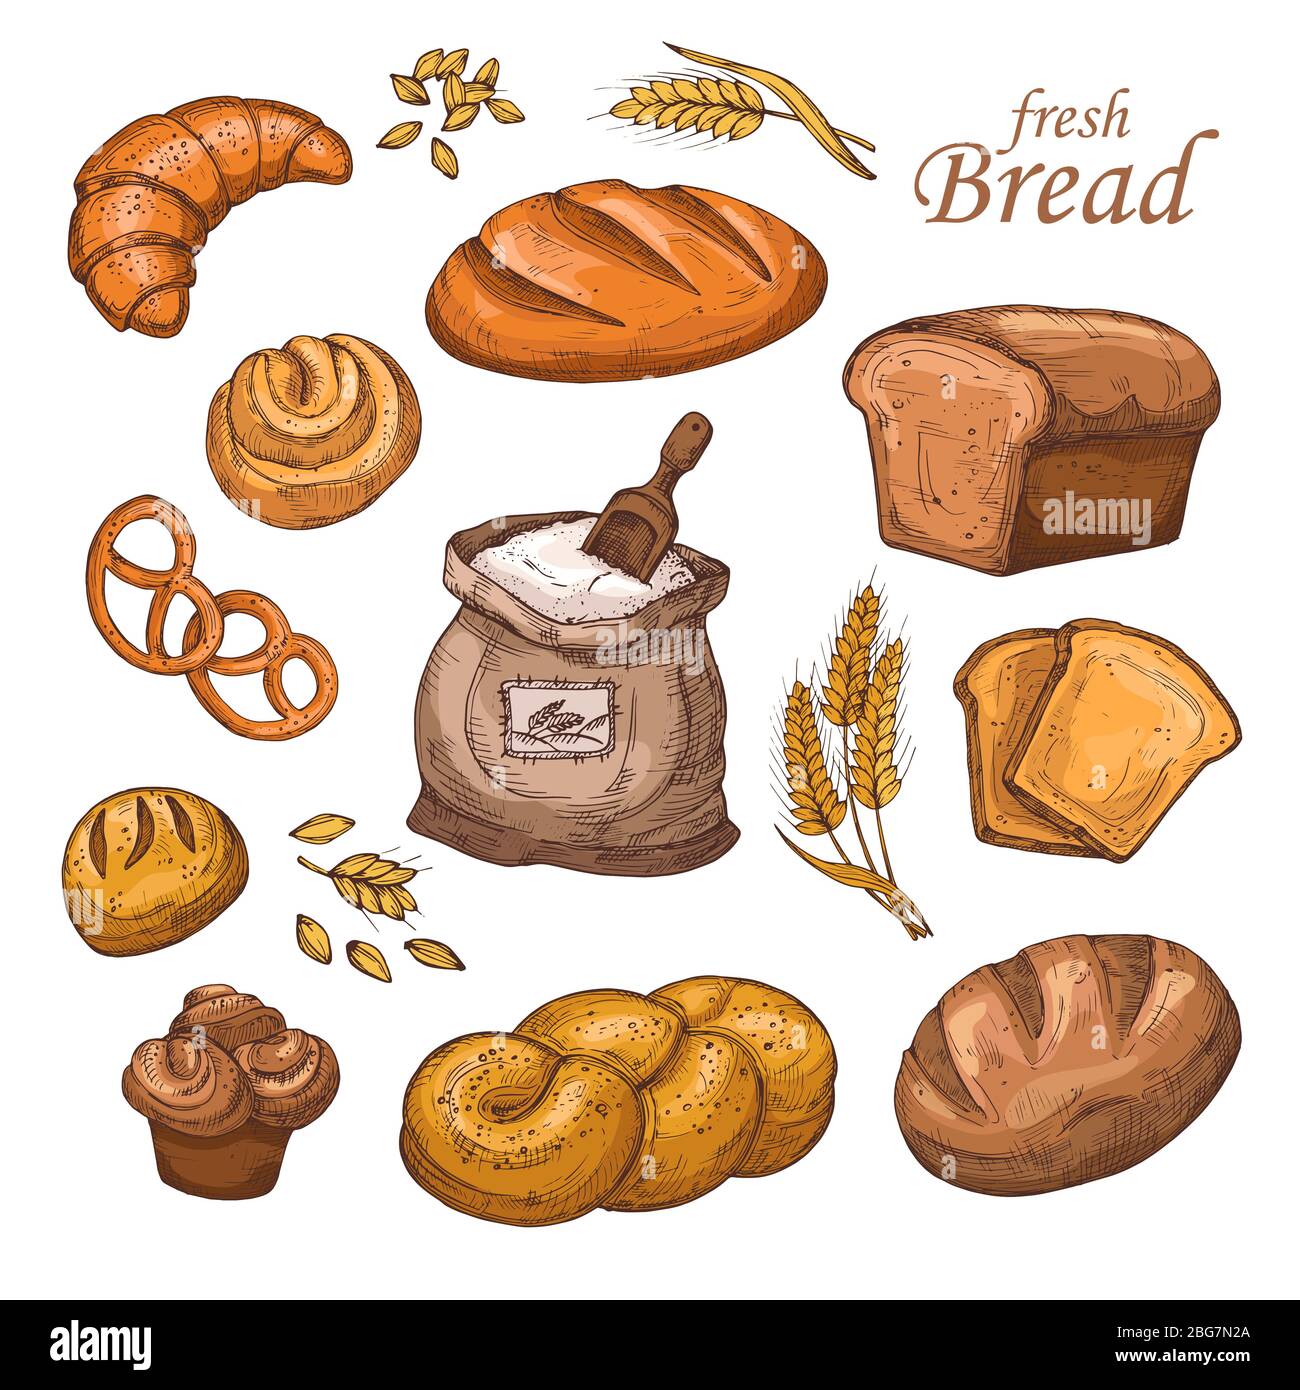 Pain de dessin animé, produit de boulangerie frais, farine, oreilles de blé. Vecteur dessiné à la main isolé sur fond blanc. Boulangerie à pain, farine et pain illustrati Illustration de Vecteur